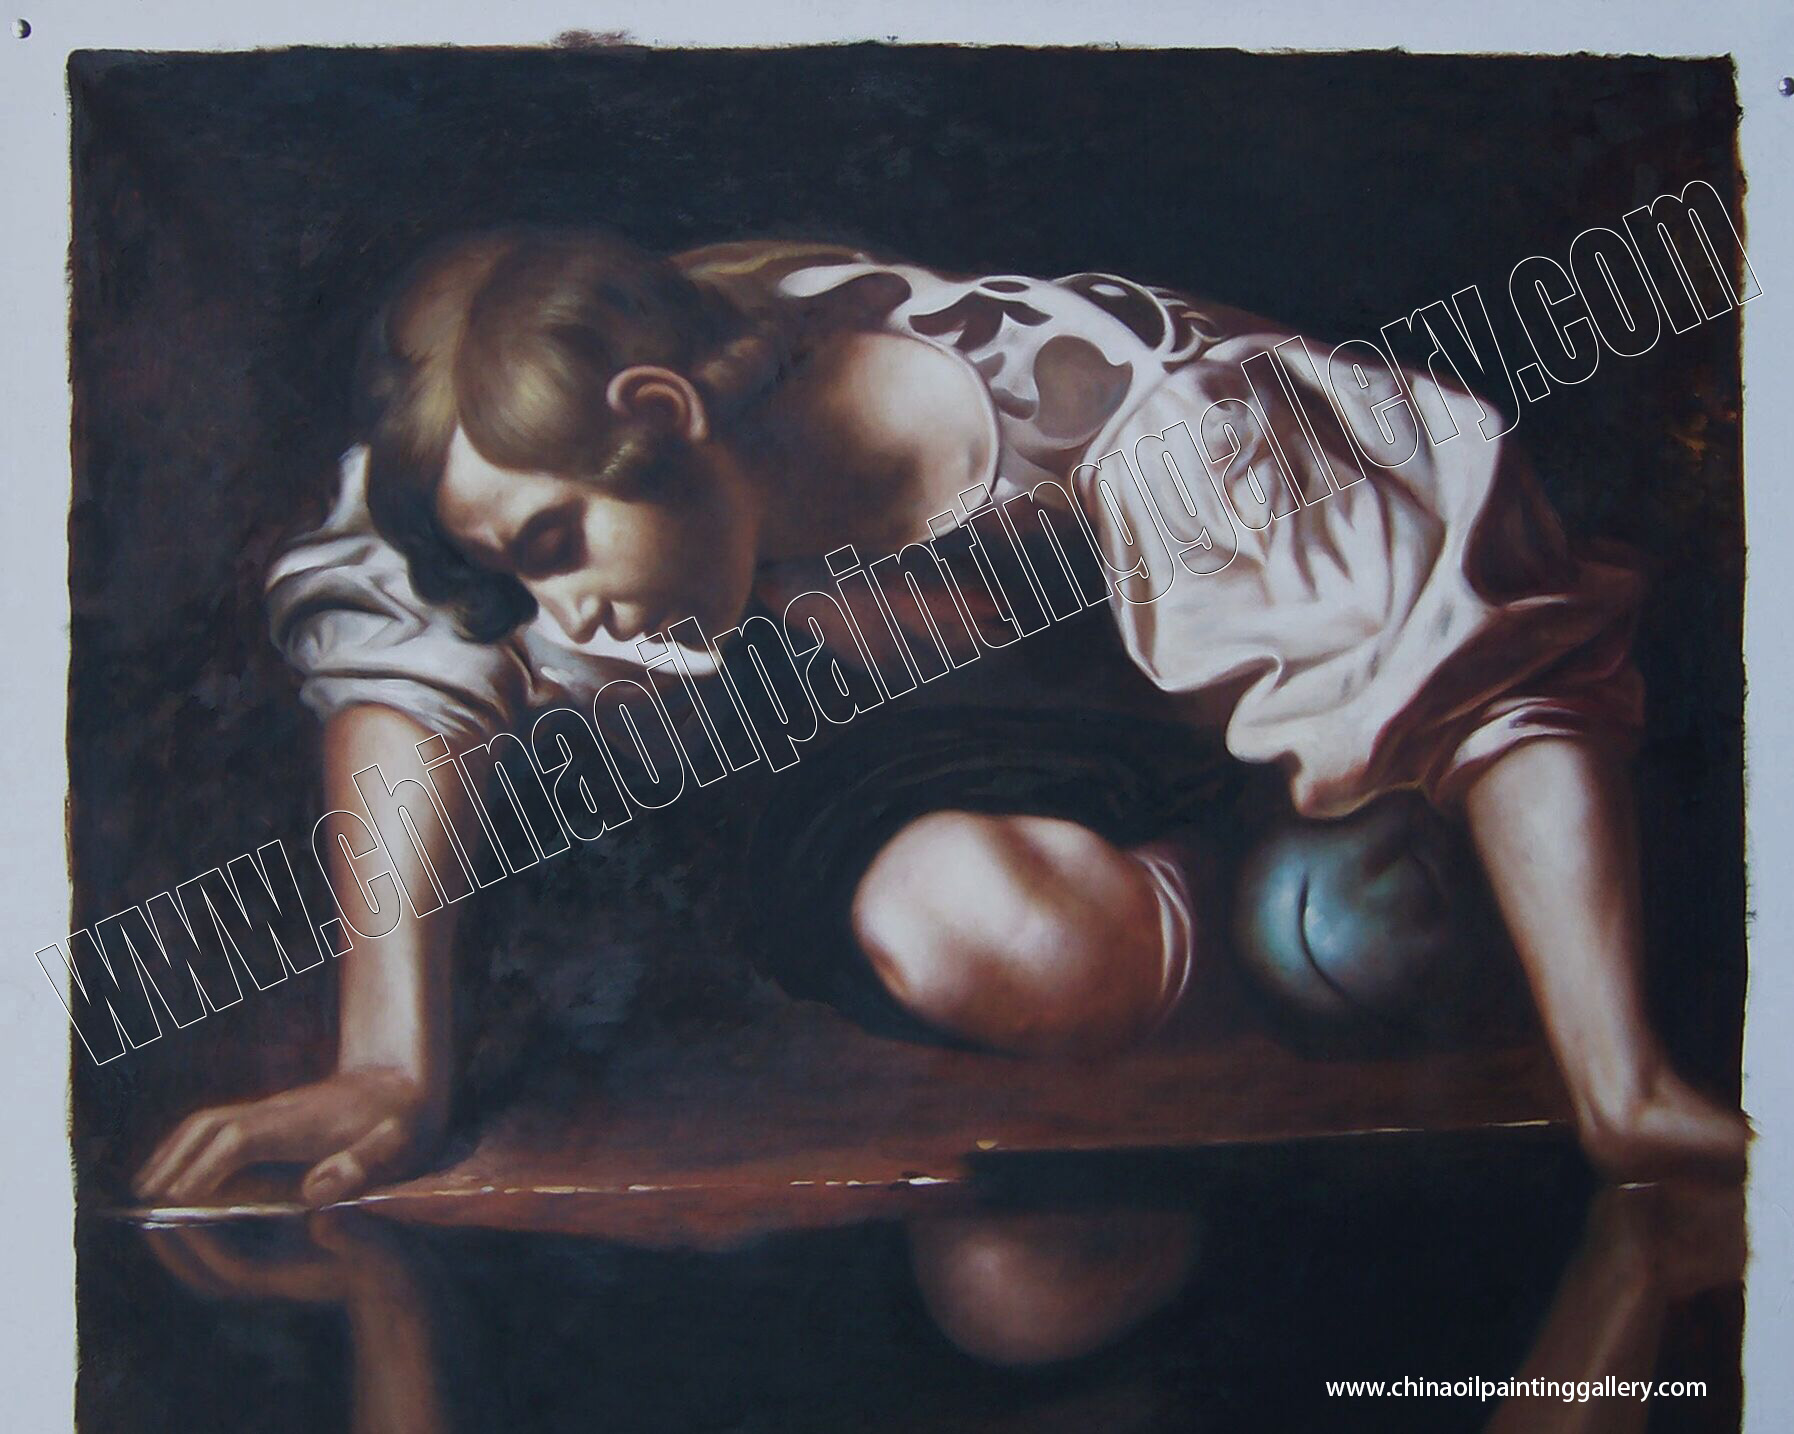 Caravaggio - Narcissus 2 detail 2